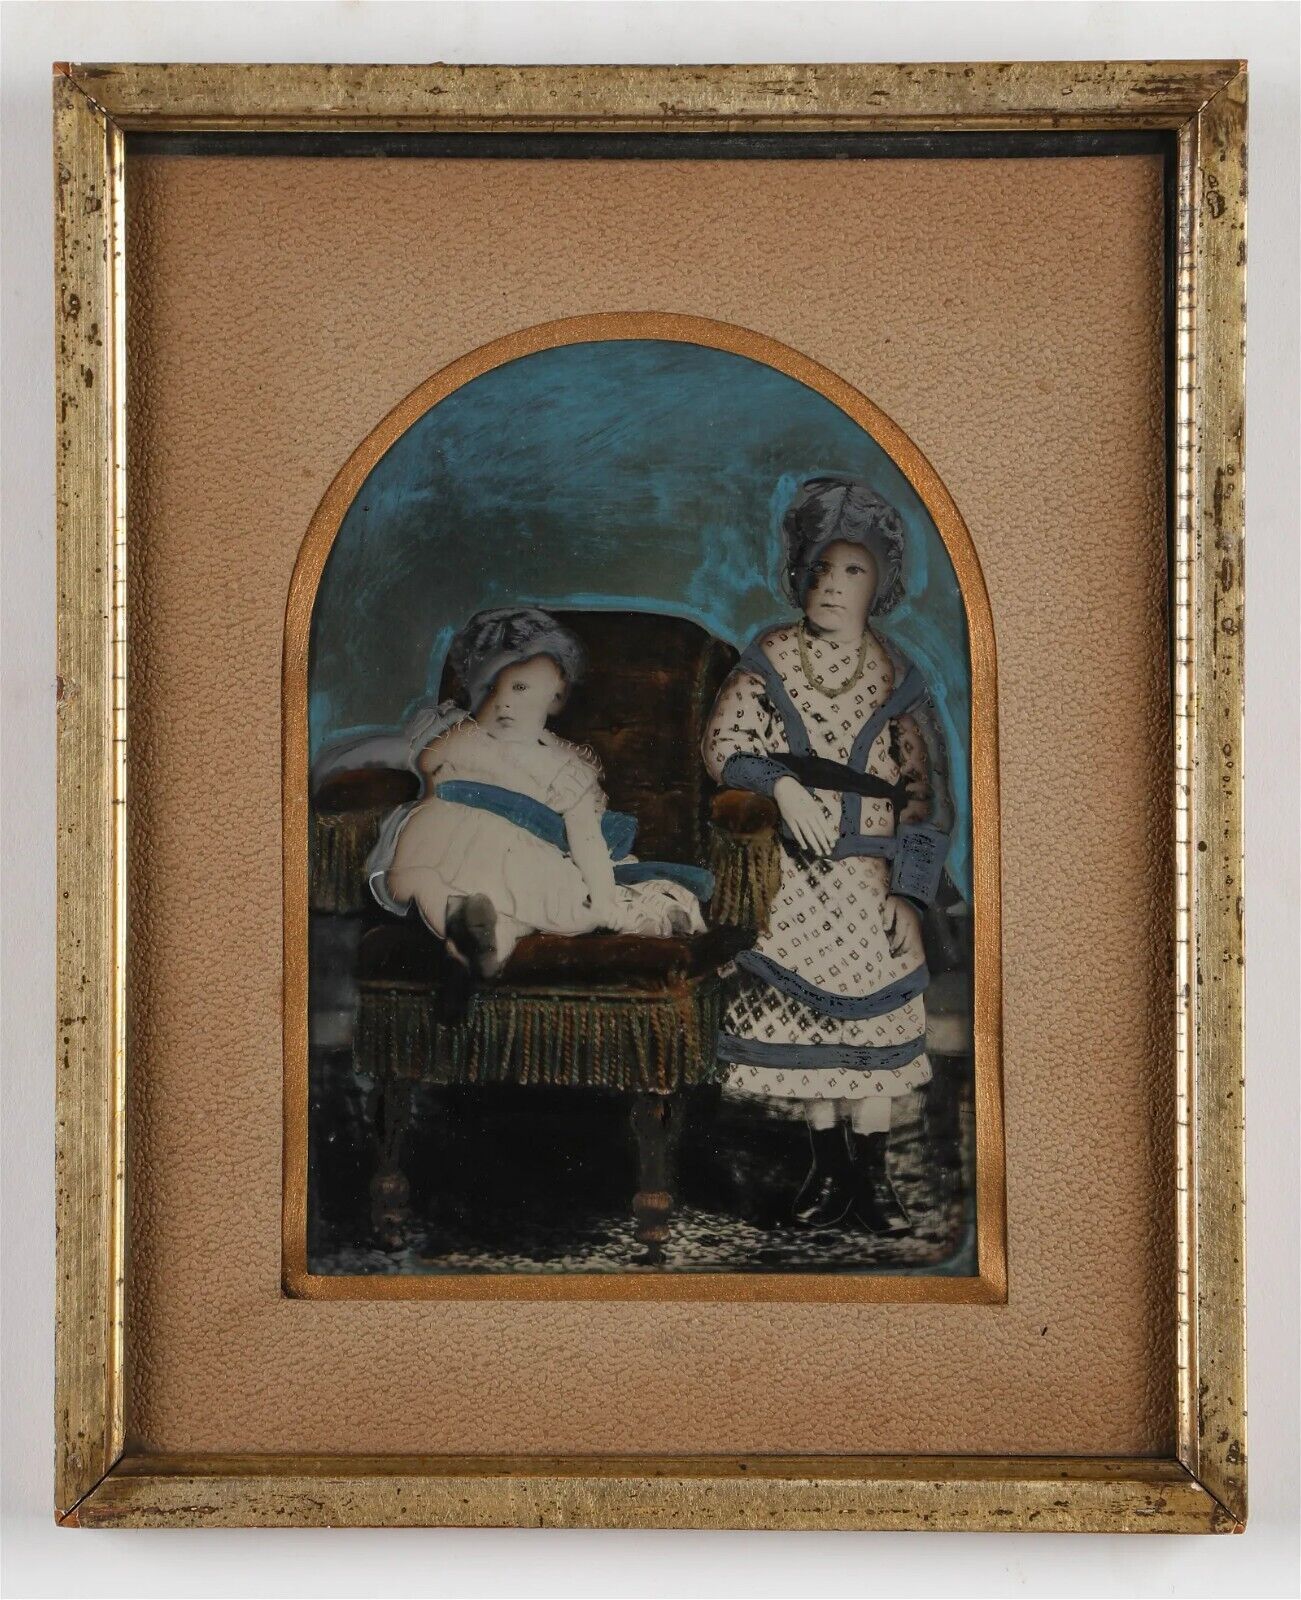 Framed Full Plate Painted Tintype Children Unusual Creepy Effect Folk Art 1800s